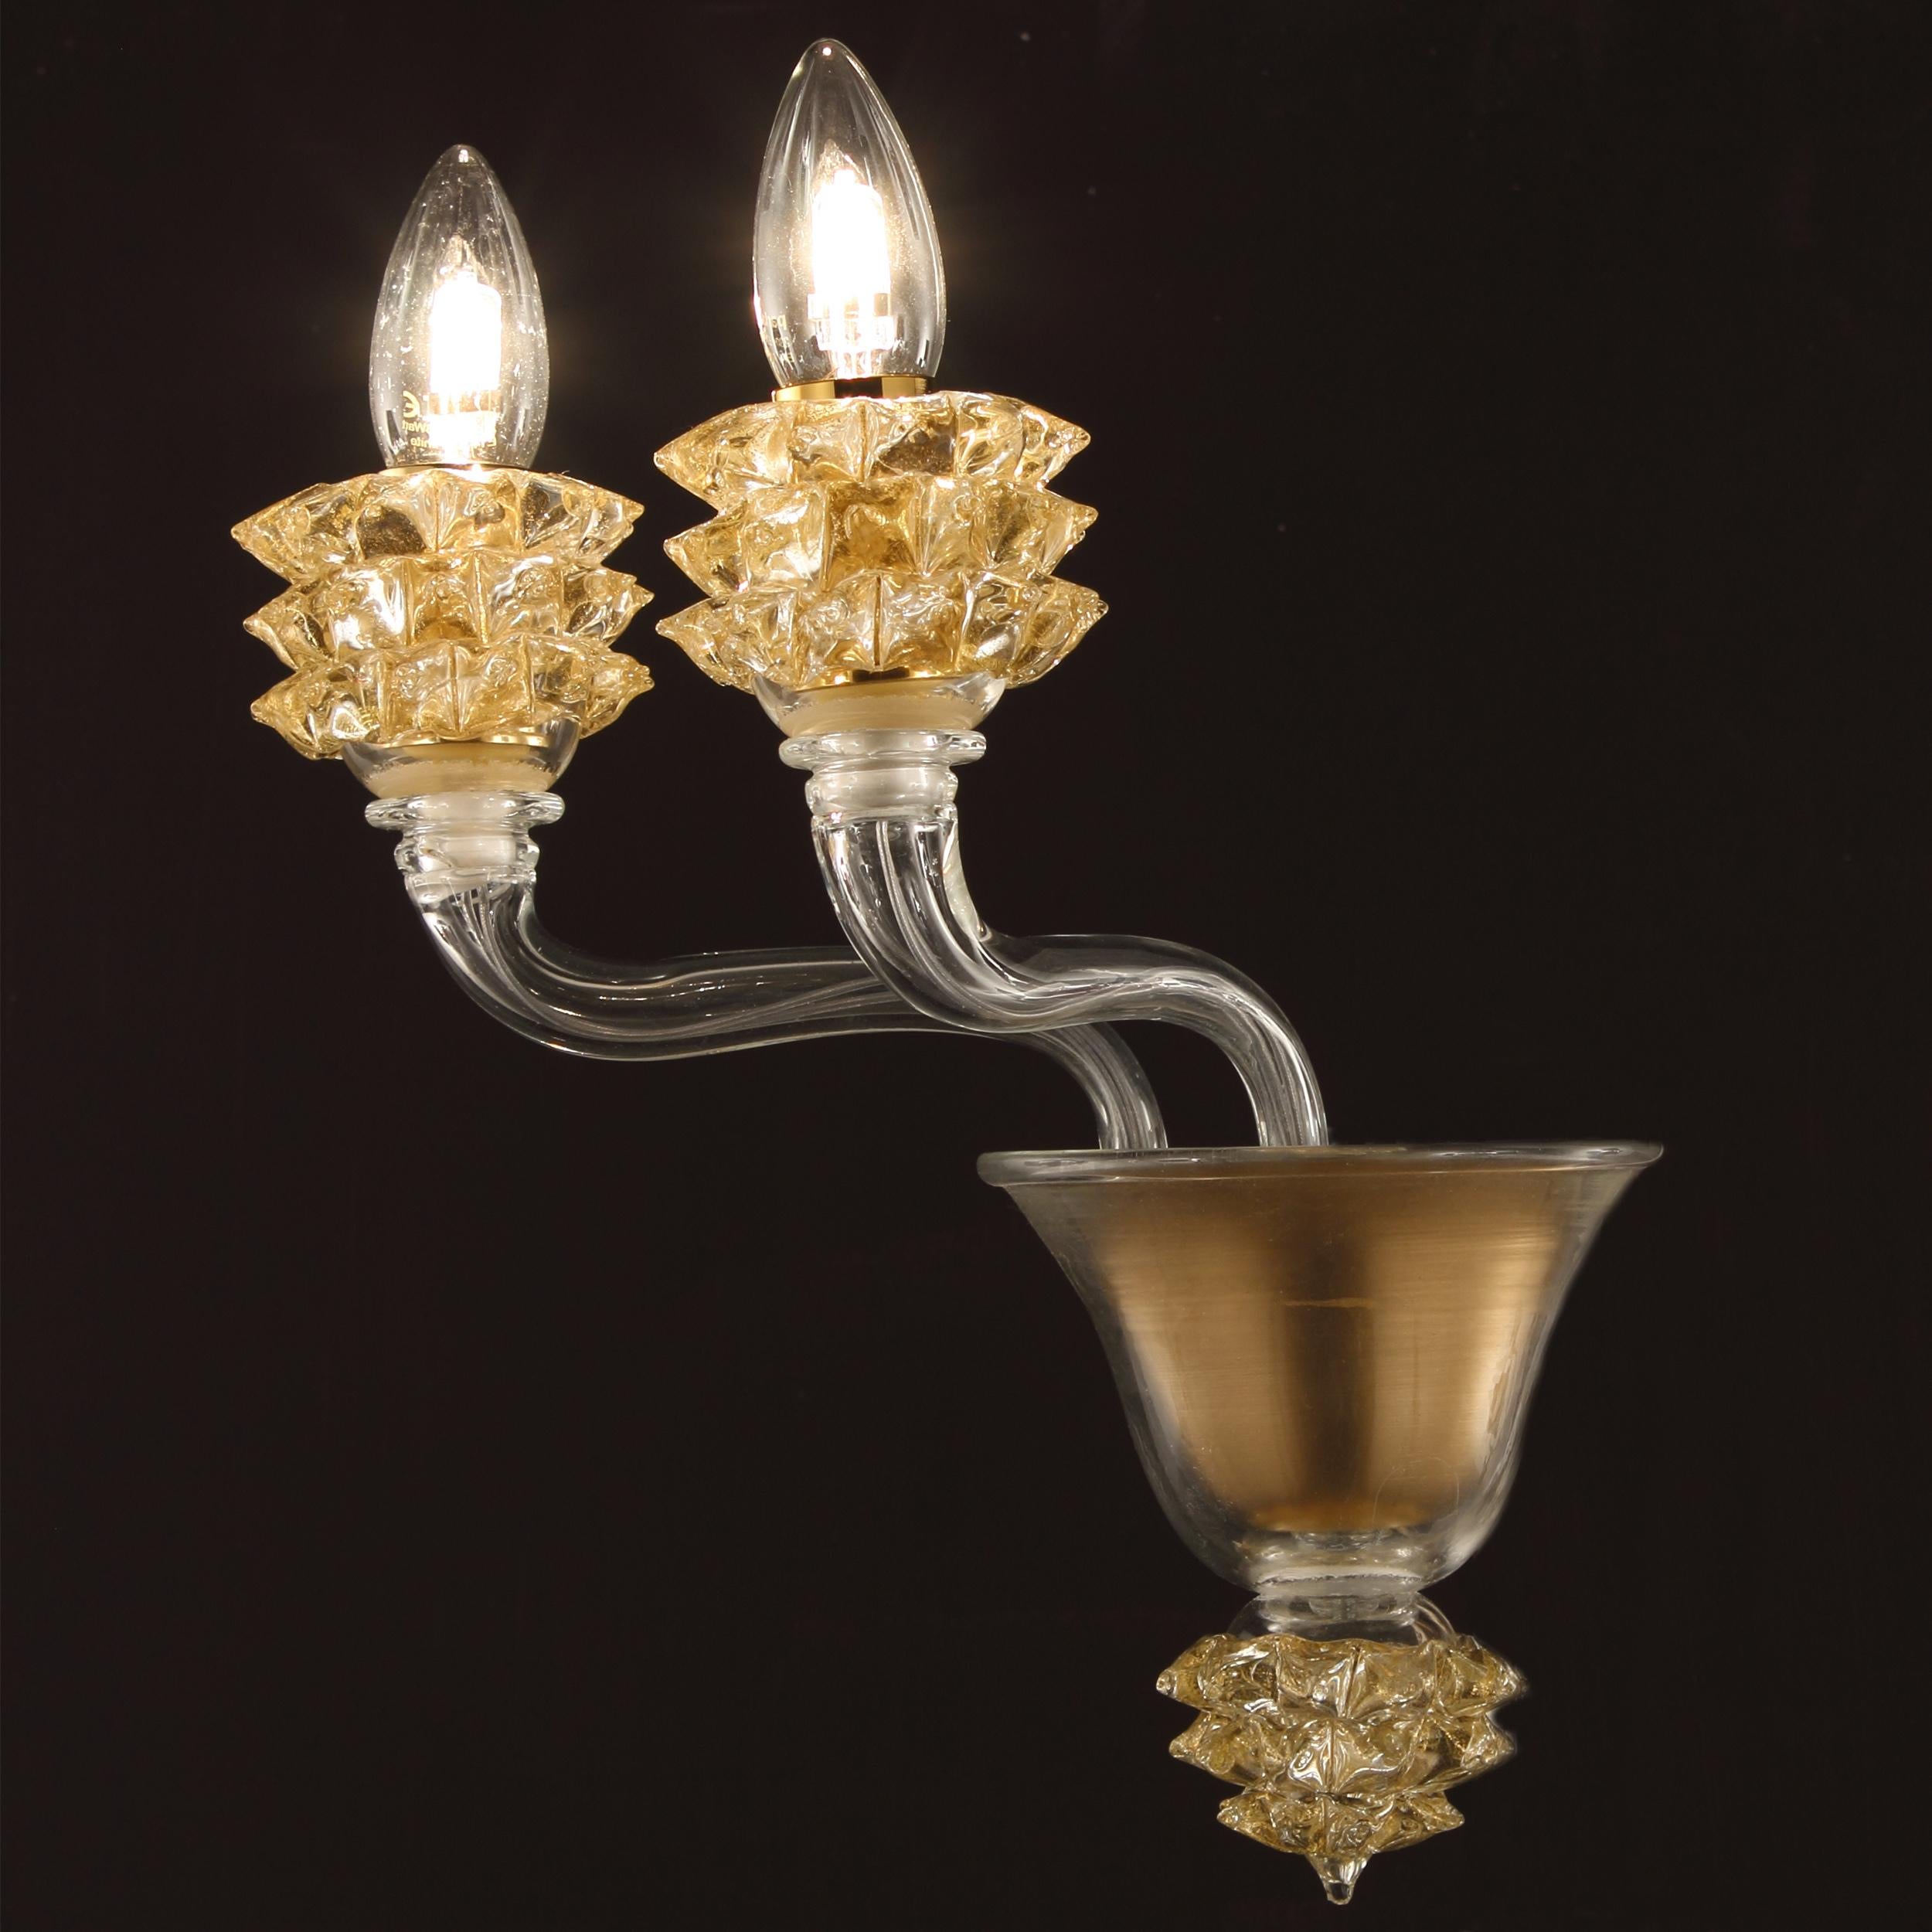 L'applique Diamante avec 2 bras en verre Murano transparent et détails dorés est un produit bien proportionné.
Le verre des bras est lisse. Les éléments remarquables de cette applique sont les coupes, qui sont créées selon un processus de